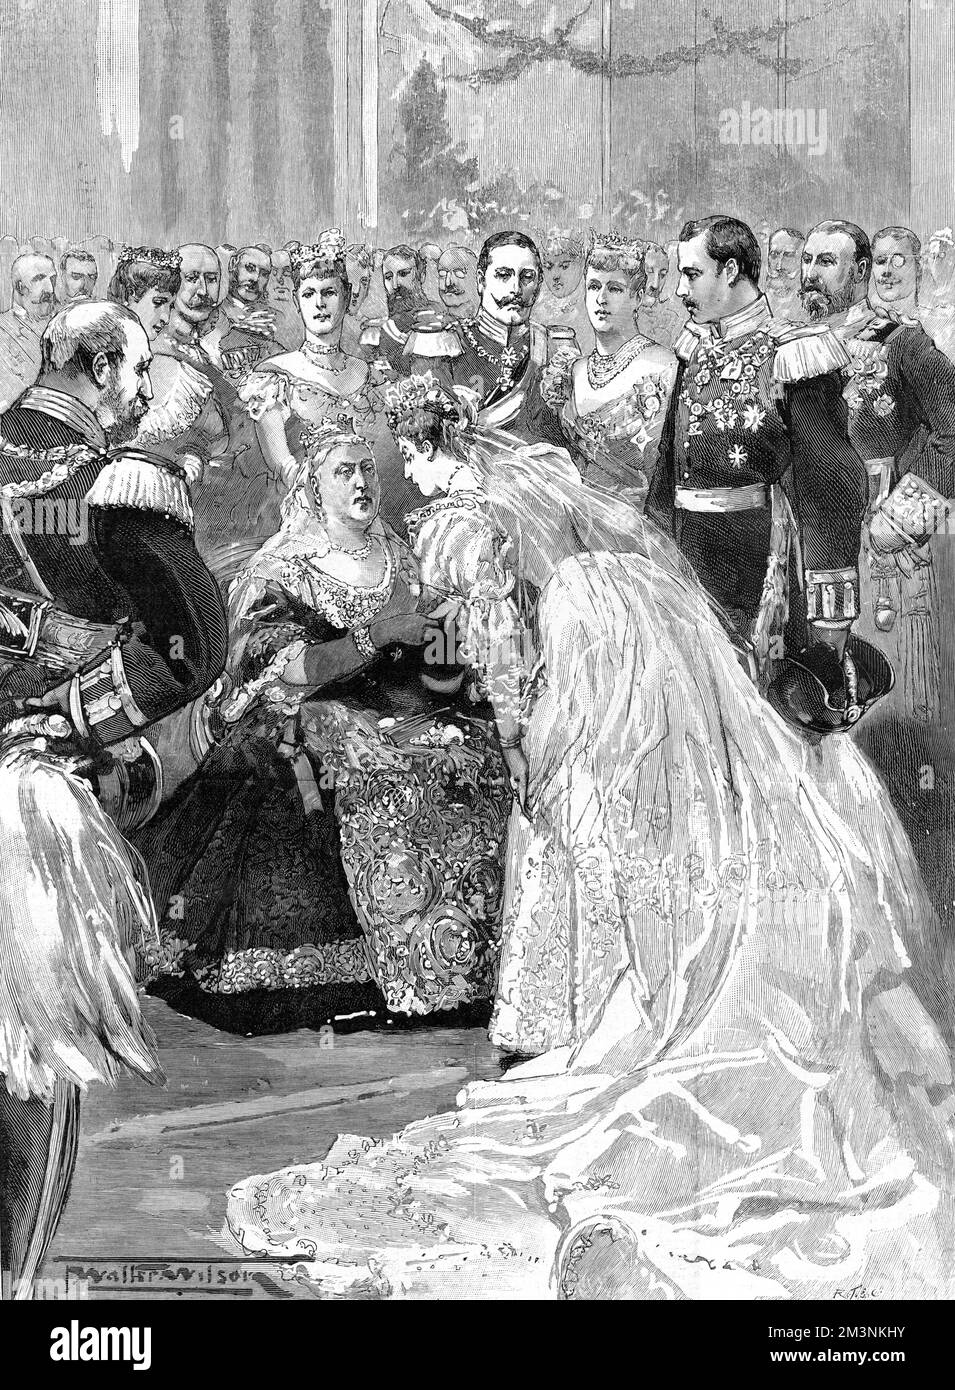 Le mariage royal de la princesse Victoria Melita d'Édimbourg et du prince Ernst Ludwig, grand-duc de Hesse. La reine Victoria embrasse la mariée après la cérémonie de mariage. Date: 1894 Banque D'Images